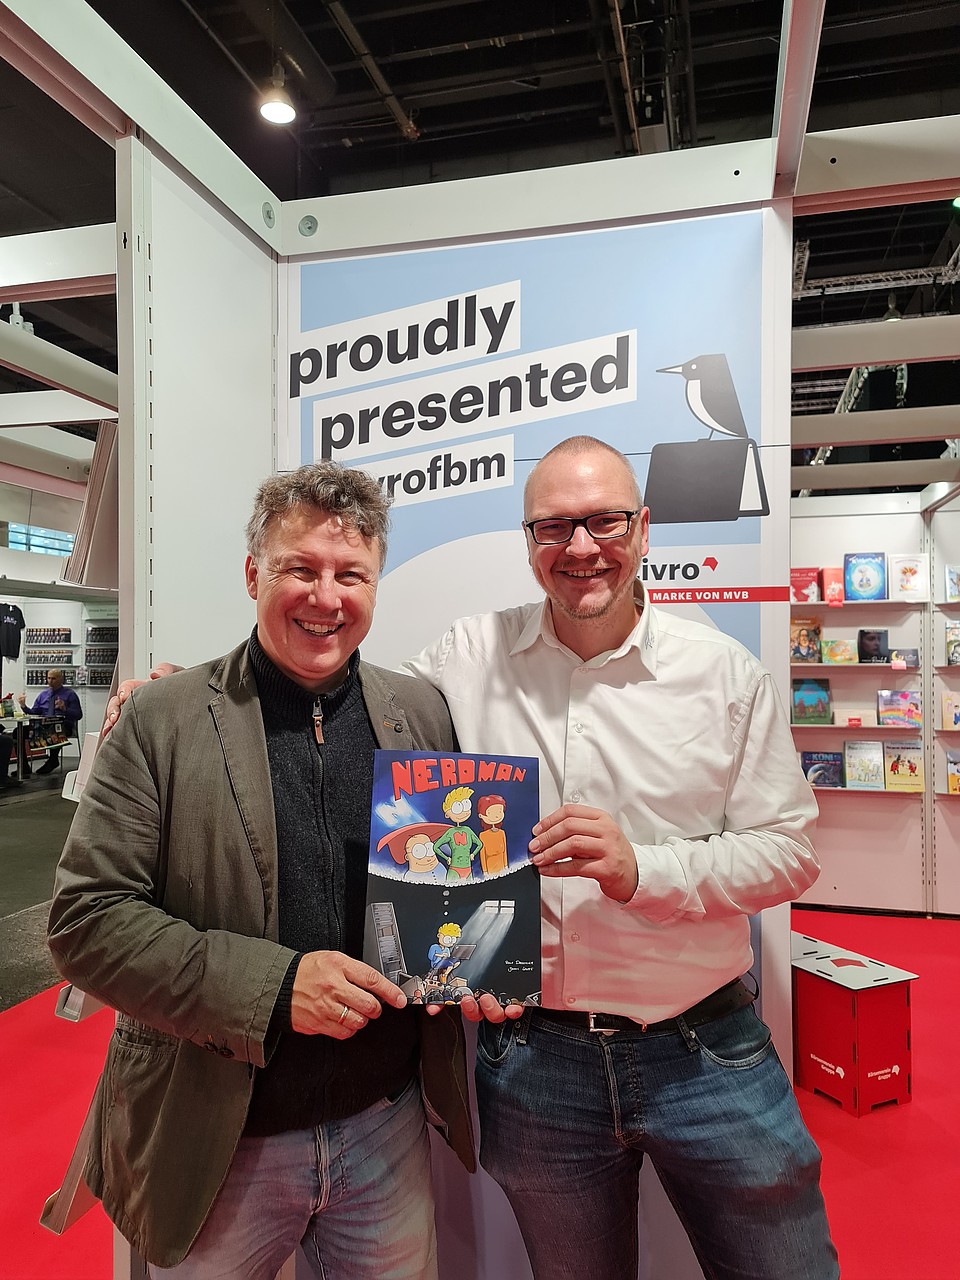 Rolf Drechsler und Jannis Stoppe auf der Frankfurter Buchmesse: Sie halten stolz ihr neu veröffentlichtes Buch in der Hand, auf dessen Cover eine nerdige Superheldenfigur abgebildet ist.